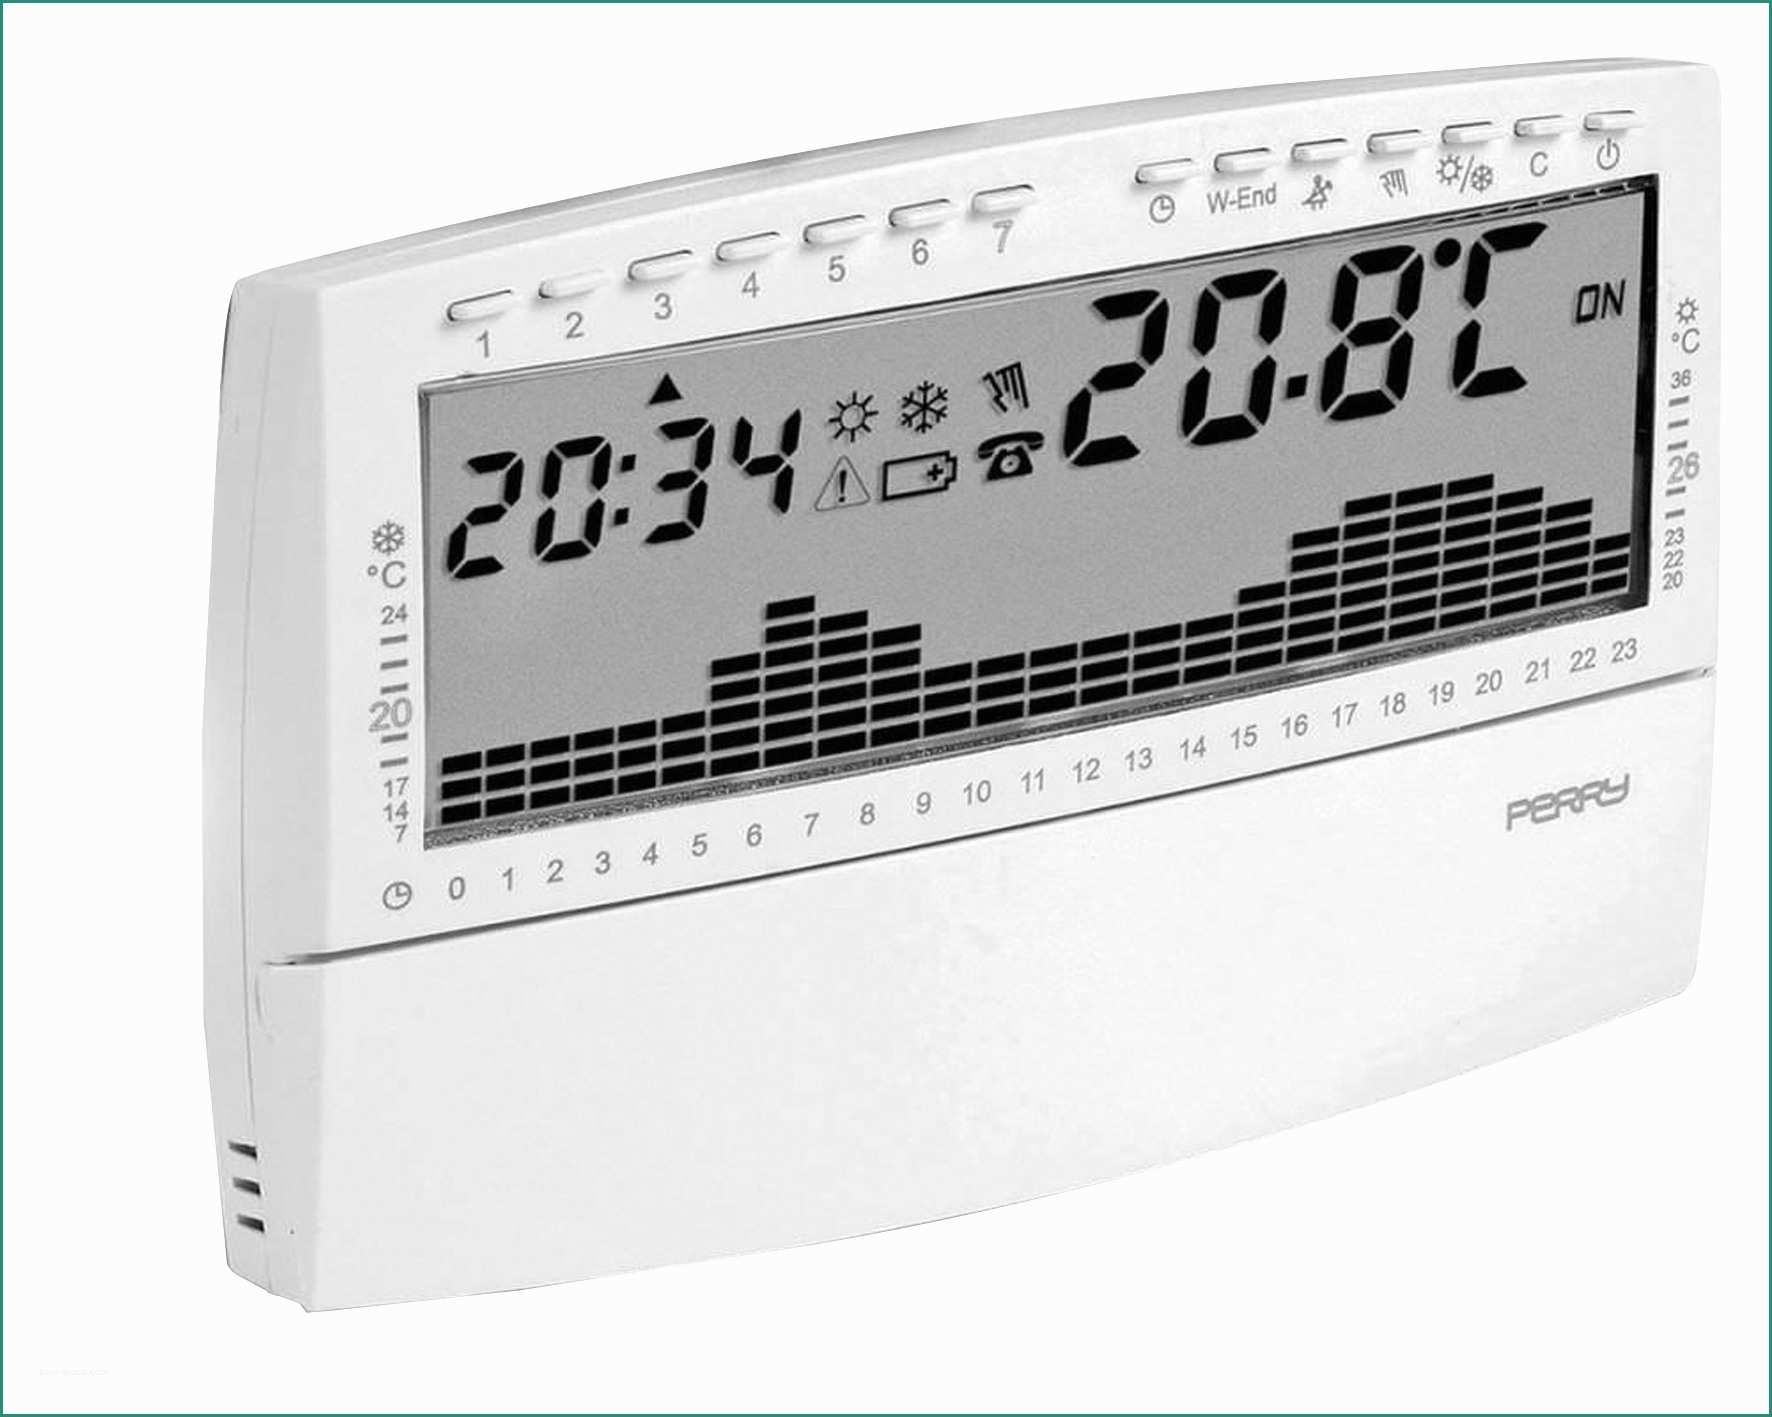 termostato bpt th istruzioni e termostato digitale incasso On termostato bpt th 350 istruzioni